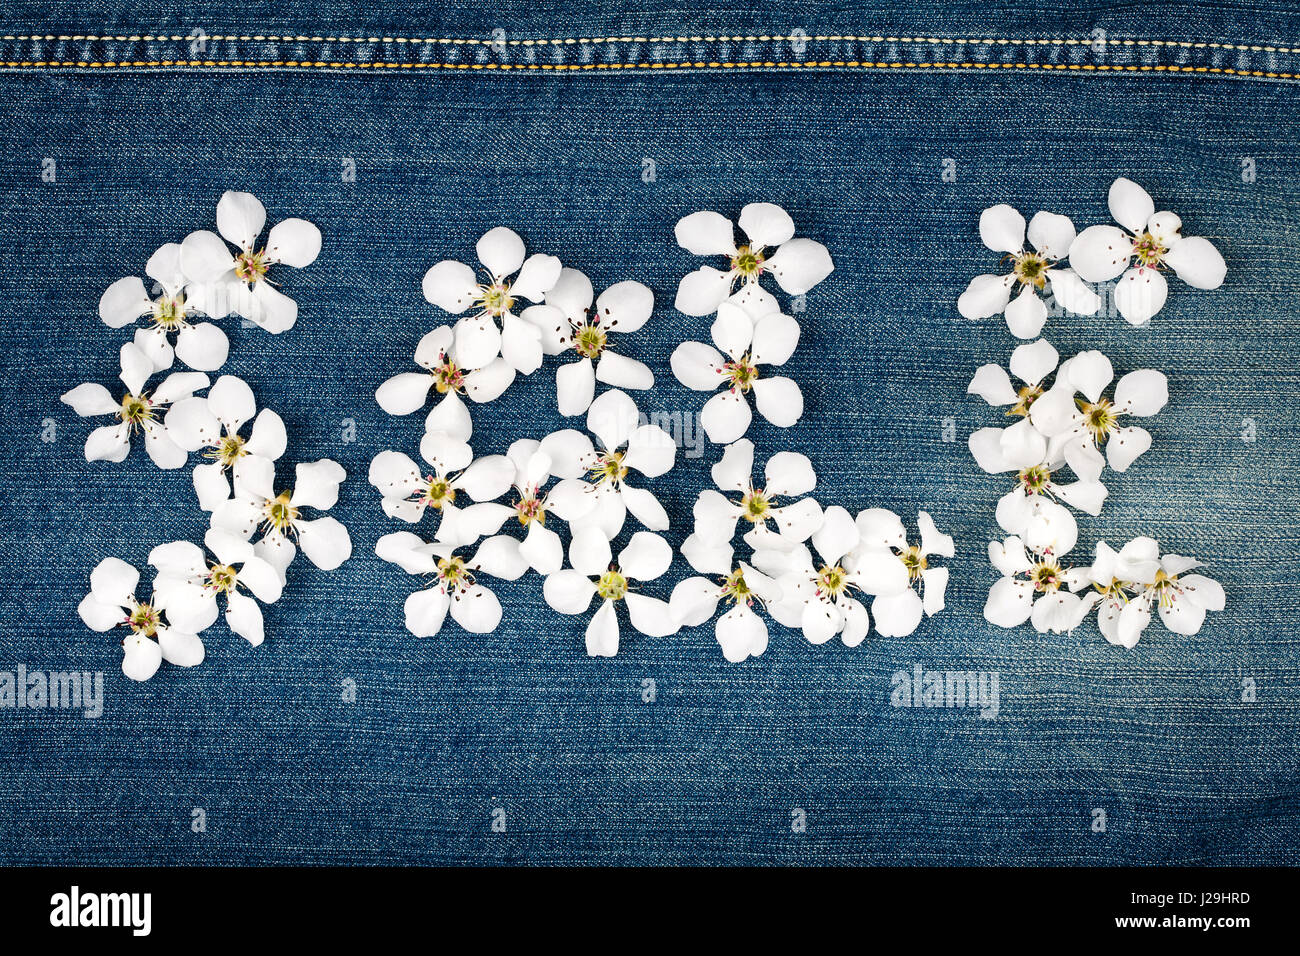 Wort-Verkauf von Blumen auf Jeans Textur gemacht Stockfoto